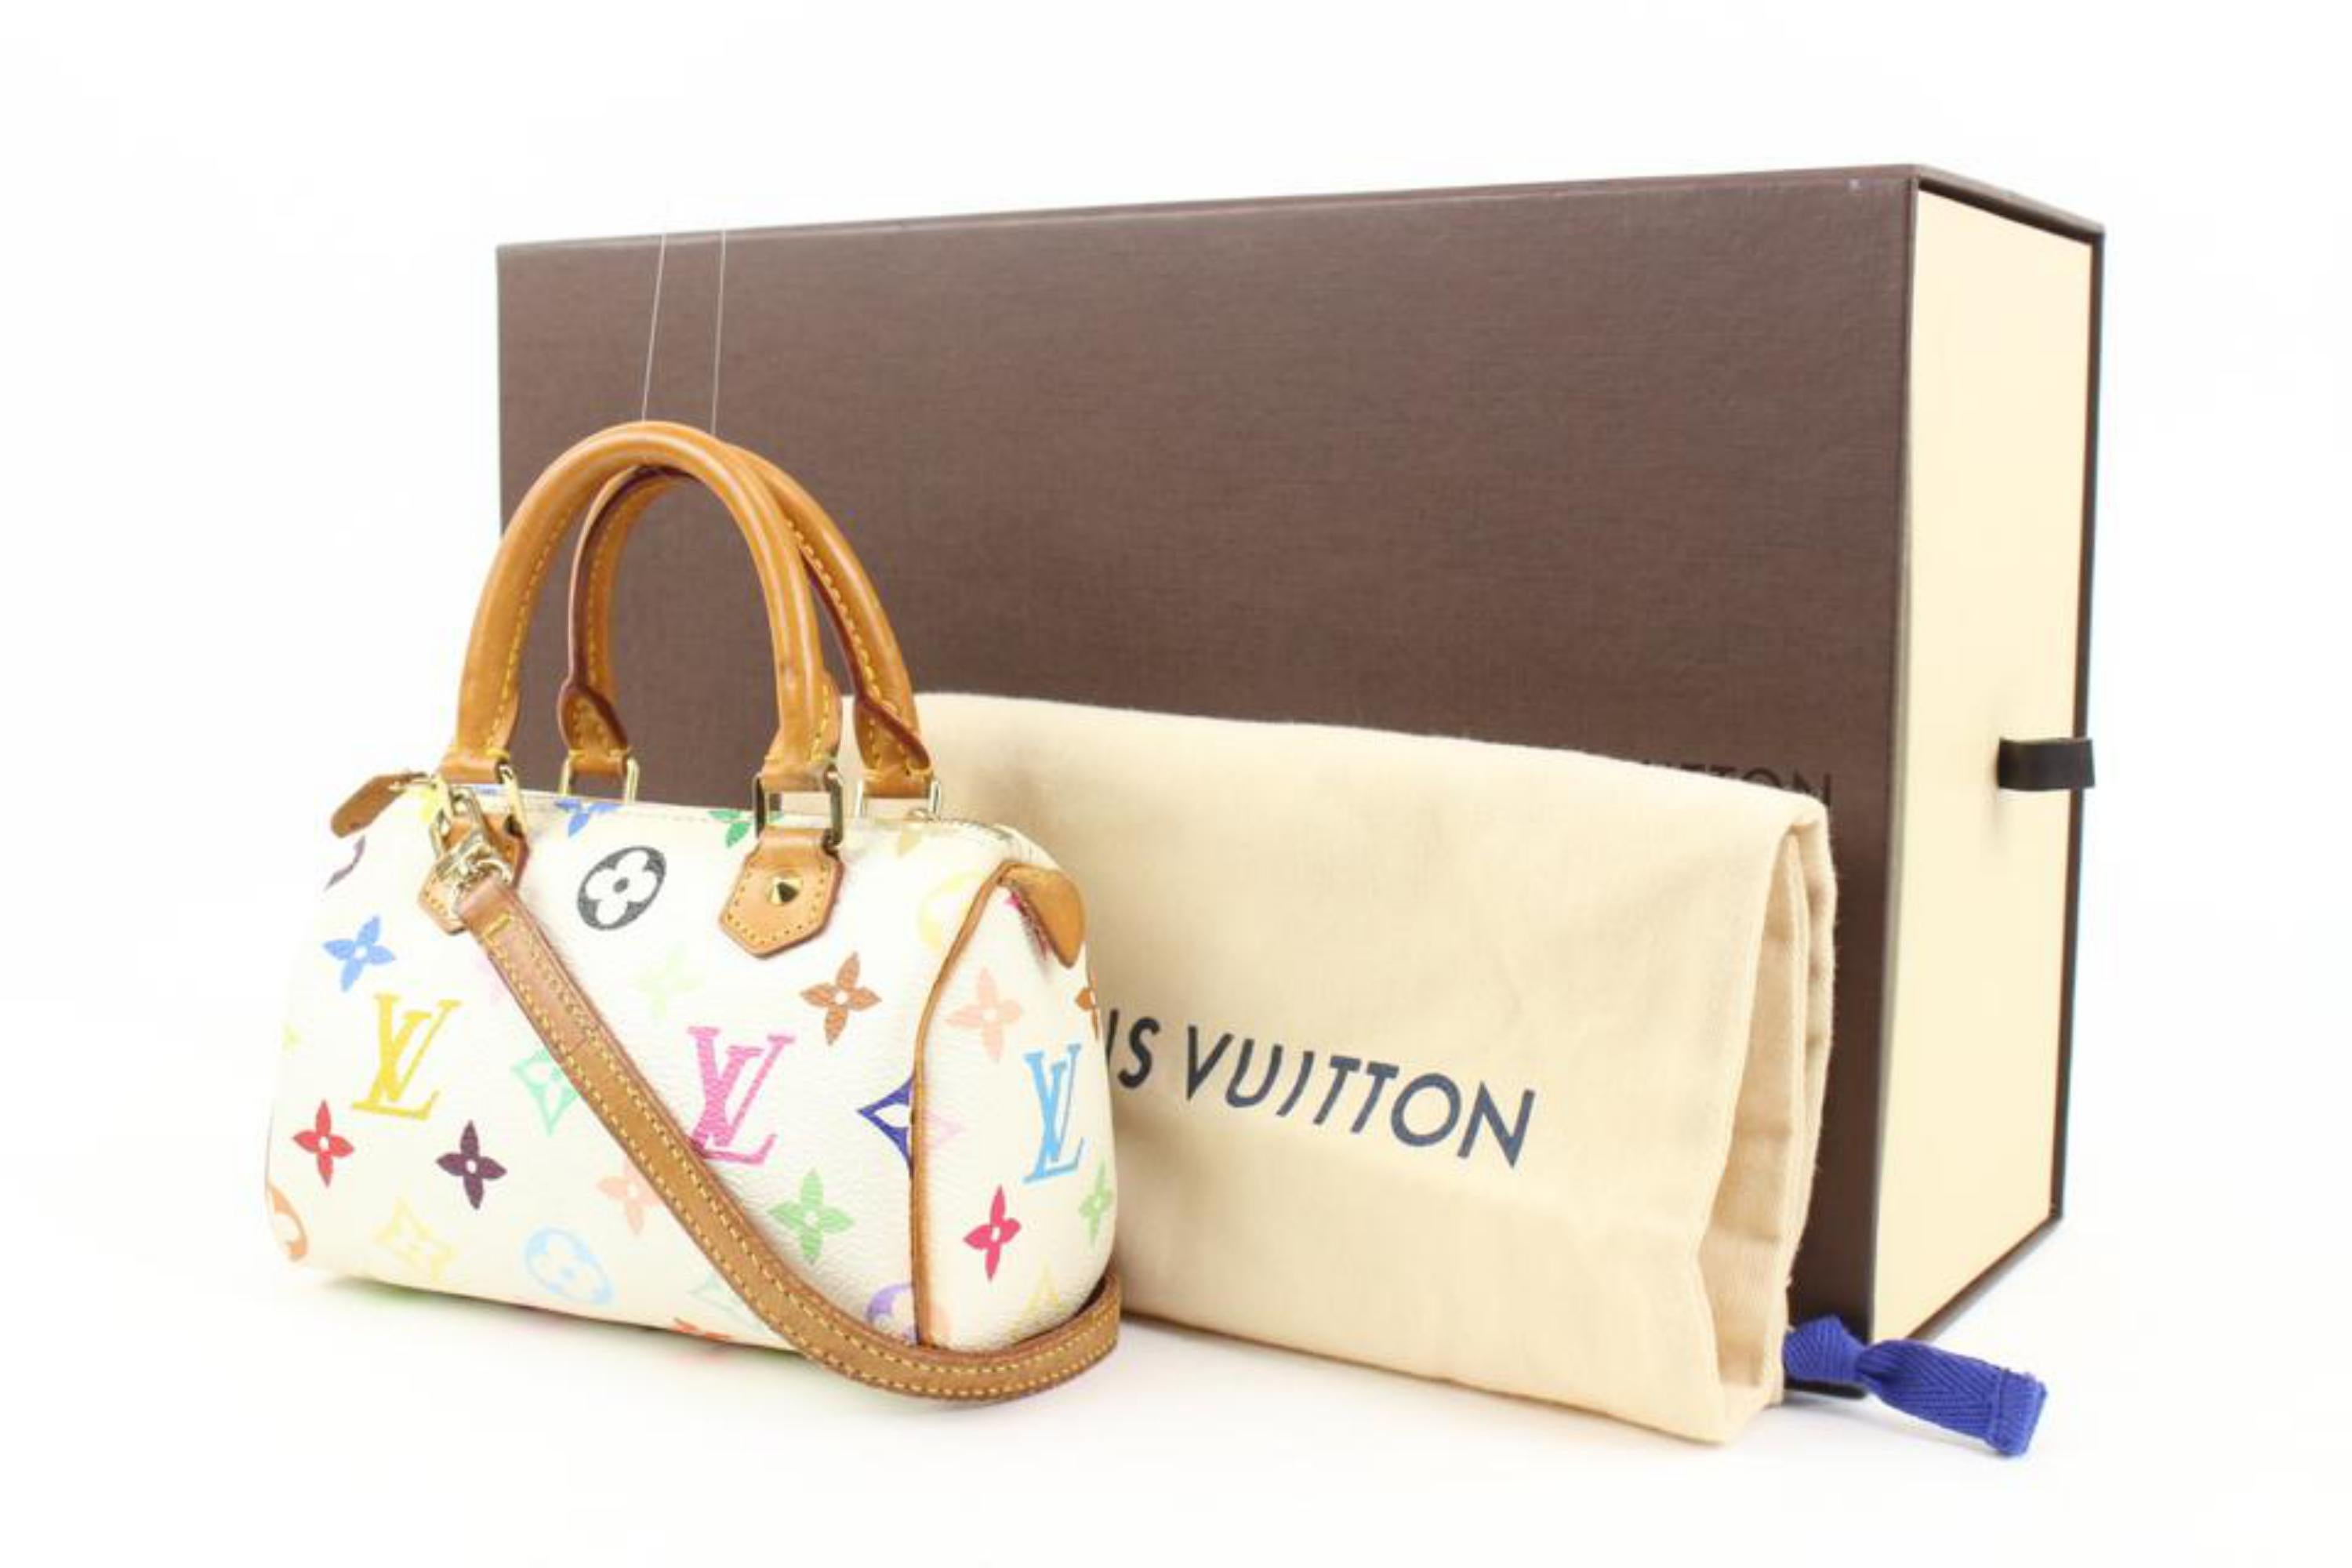 Louis Vuitton 2008 Pre-owned Mini Speedy Bag - White